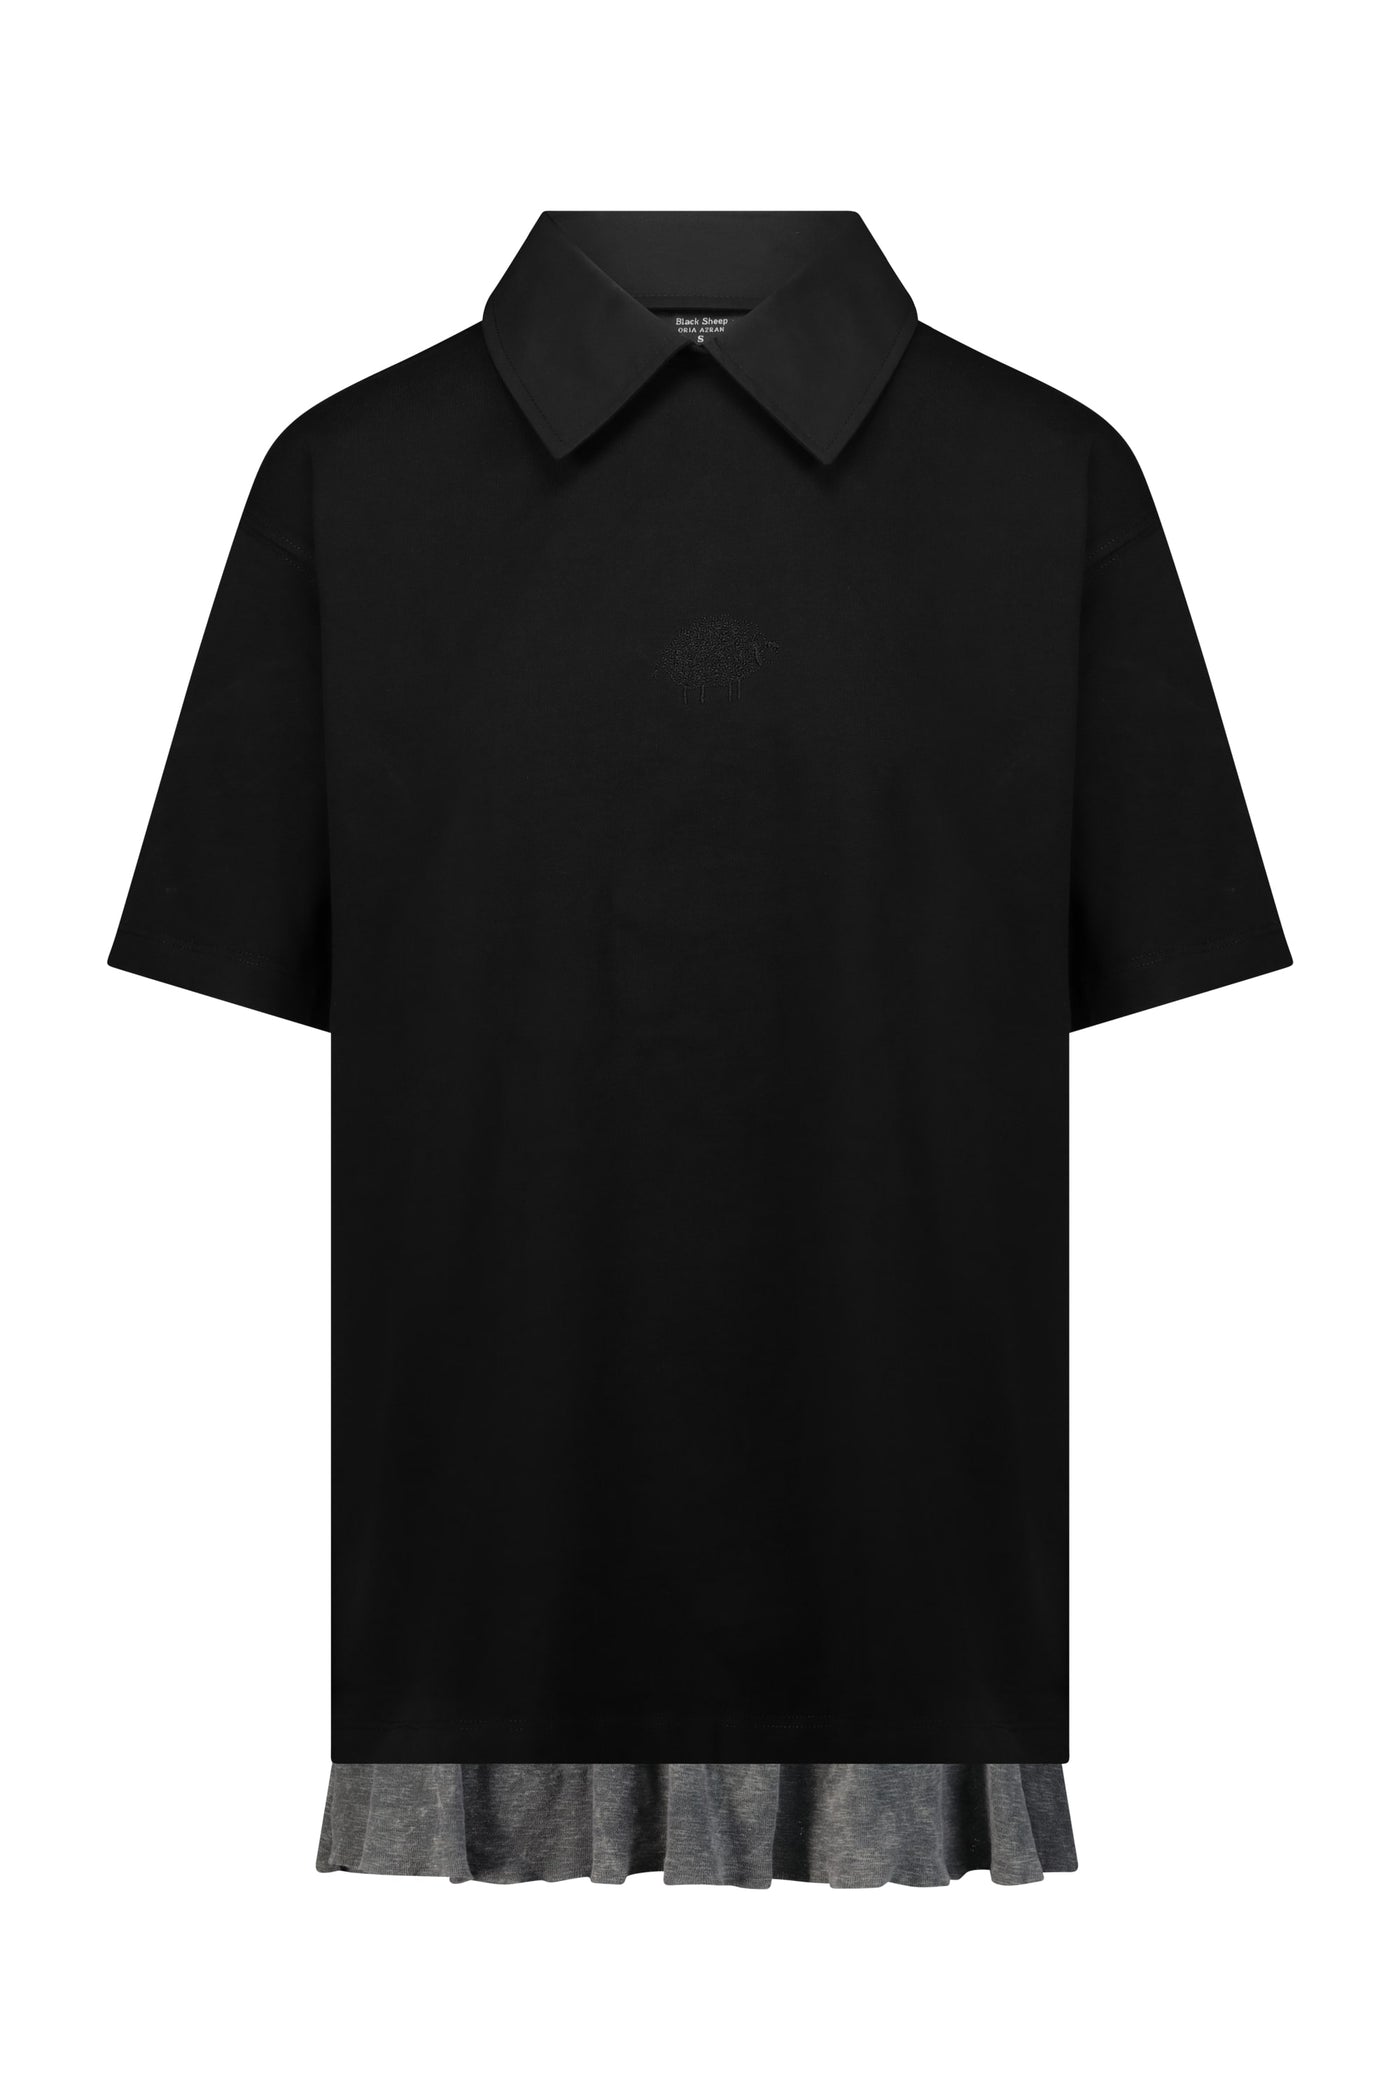 חולצת Black Sheep- קצרה שחורה יוניסקס